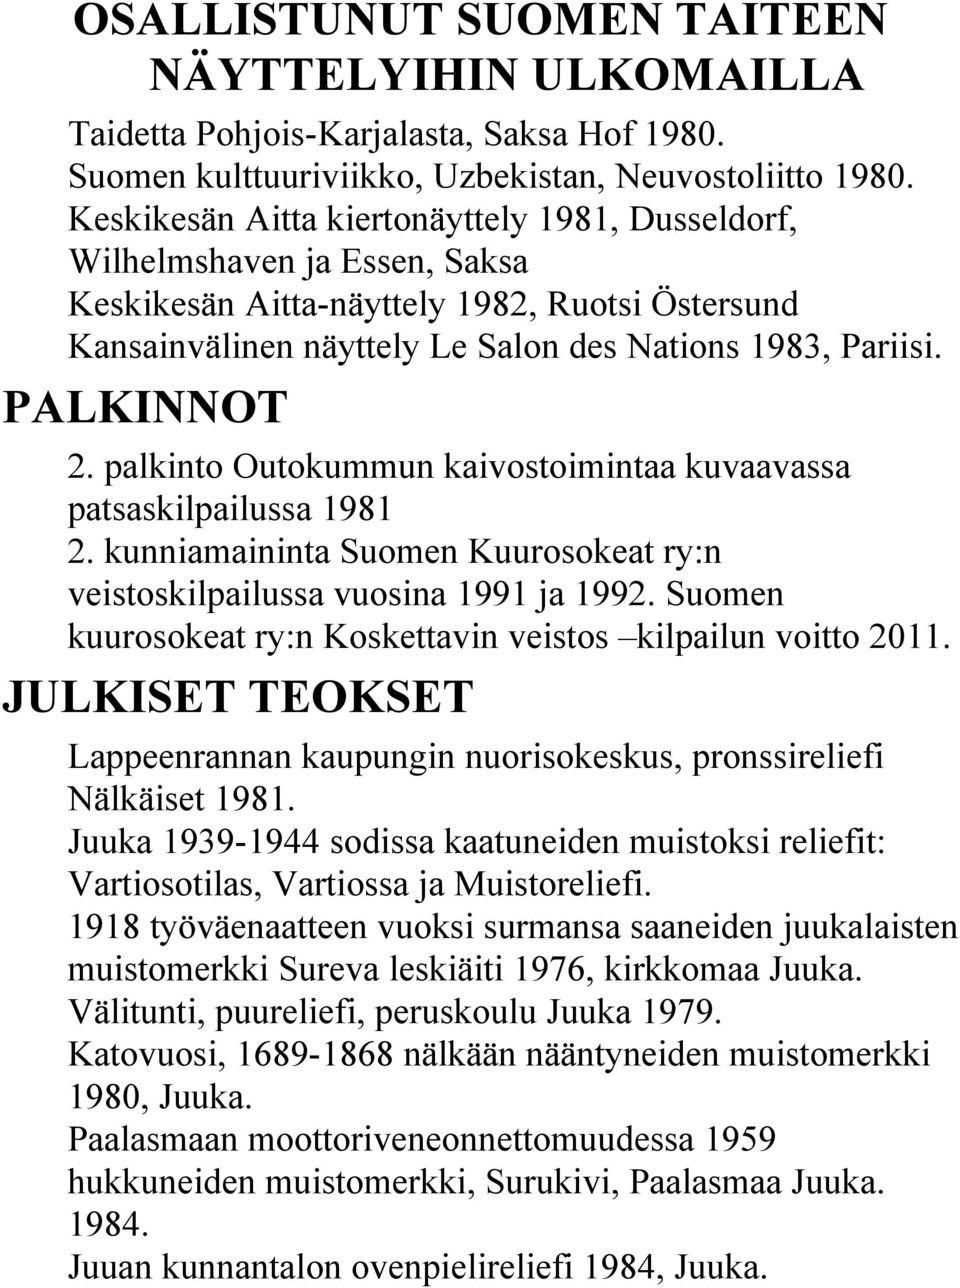 PALKINNOT 2. palkinto Outokummun kaivostoimintaa kuvaavassa patsaskilpailussa 1981 2. kunniamaininta Suomen Kuurosokeat ry:n veistoskilpailussa vuosina 1991 ja 1992.